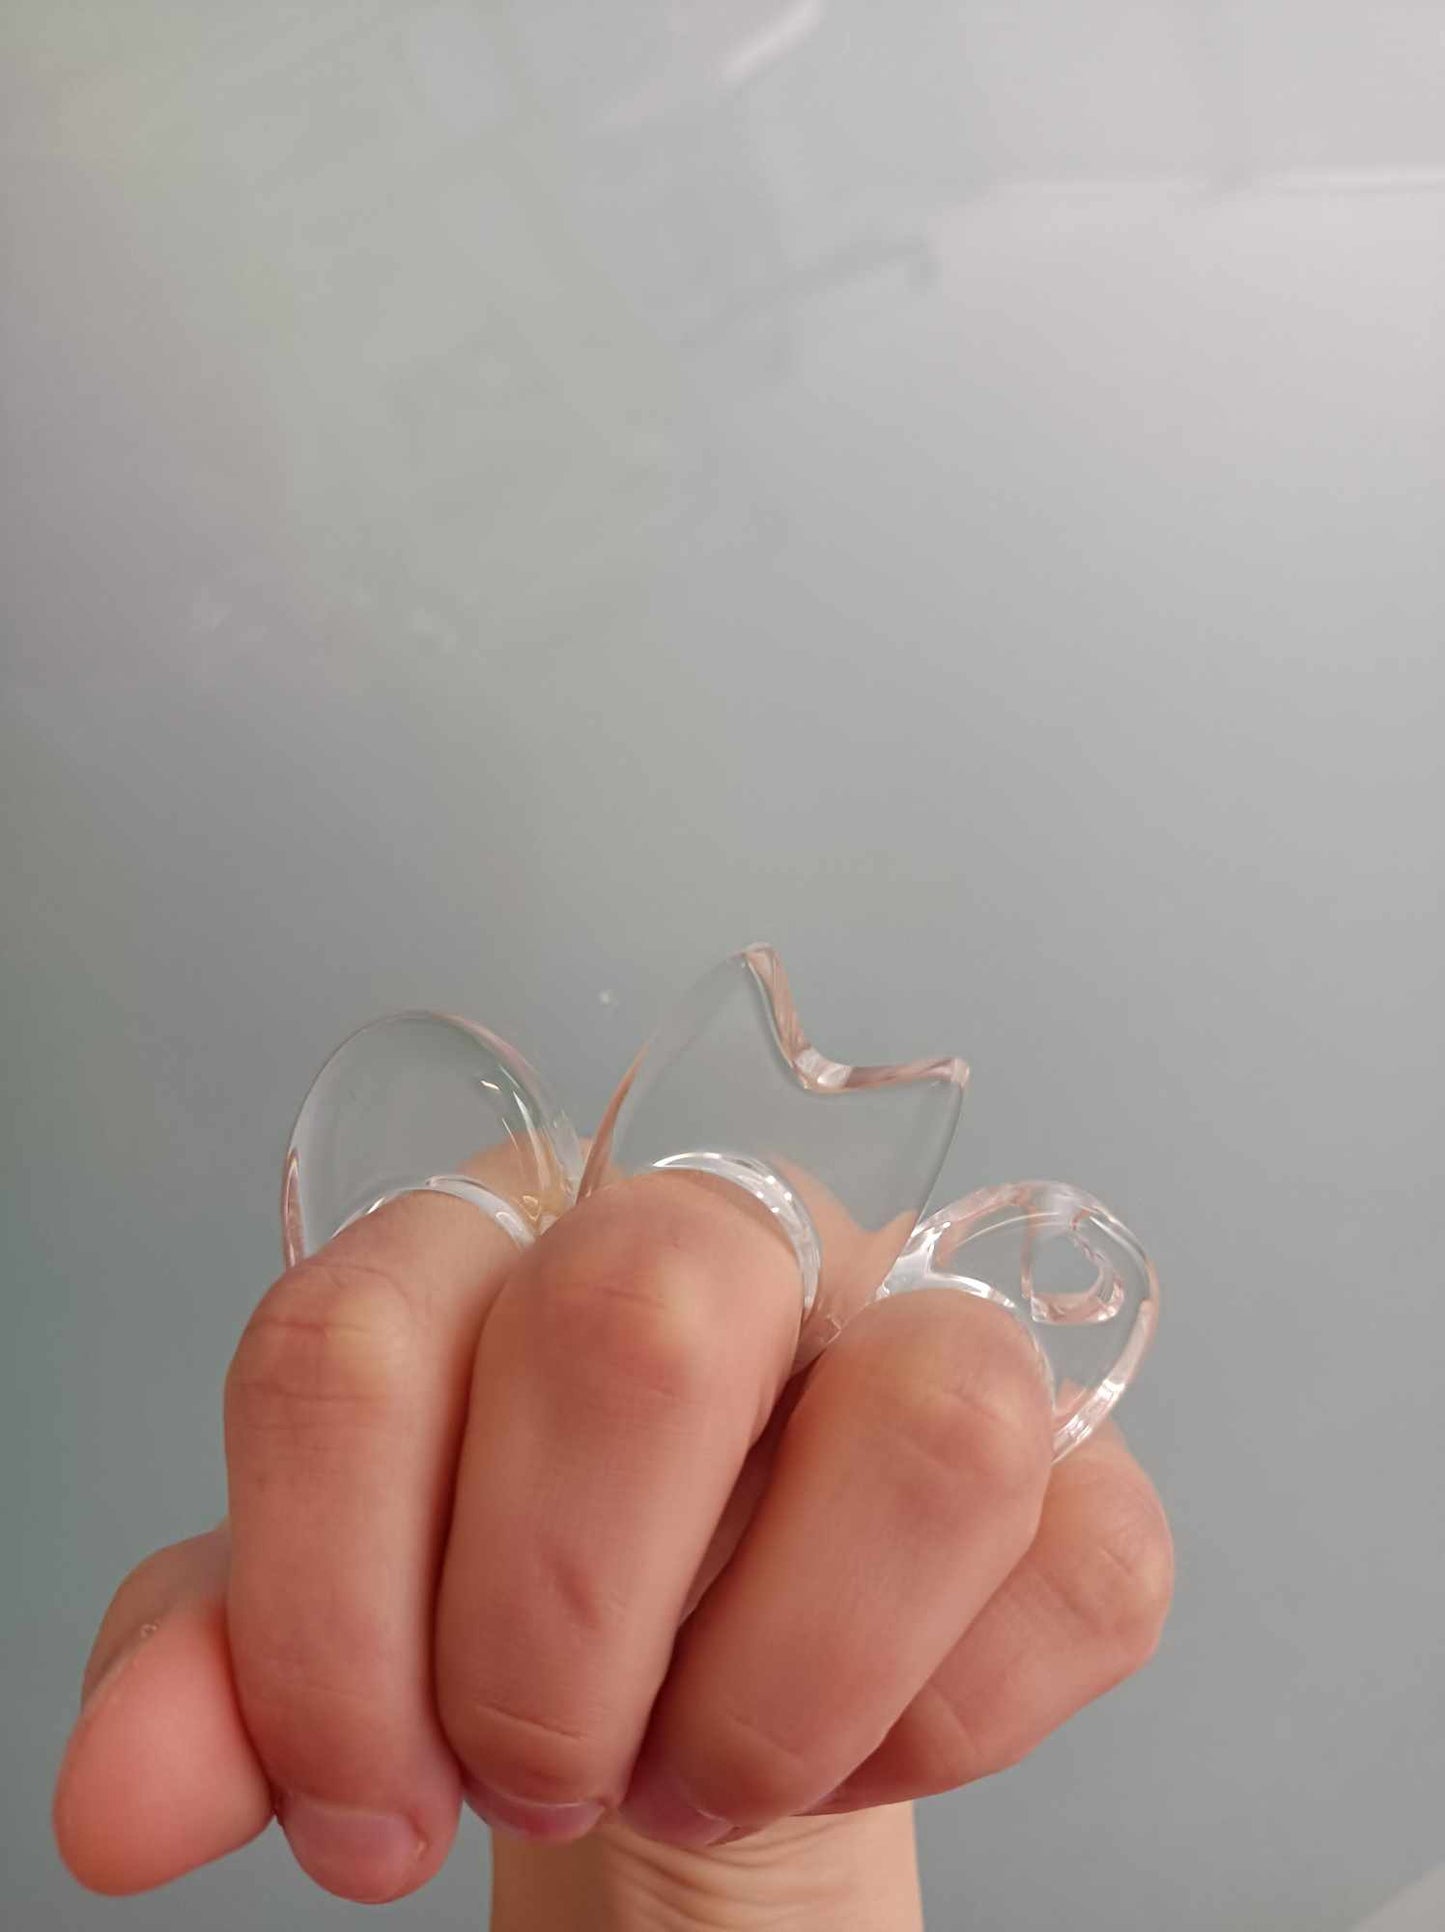 Anneau acrylique clair, anneau transparent ovale gras, anneau de déclaration Lucite